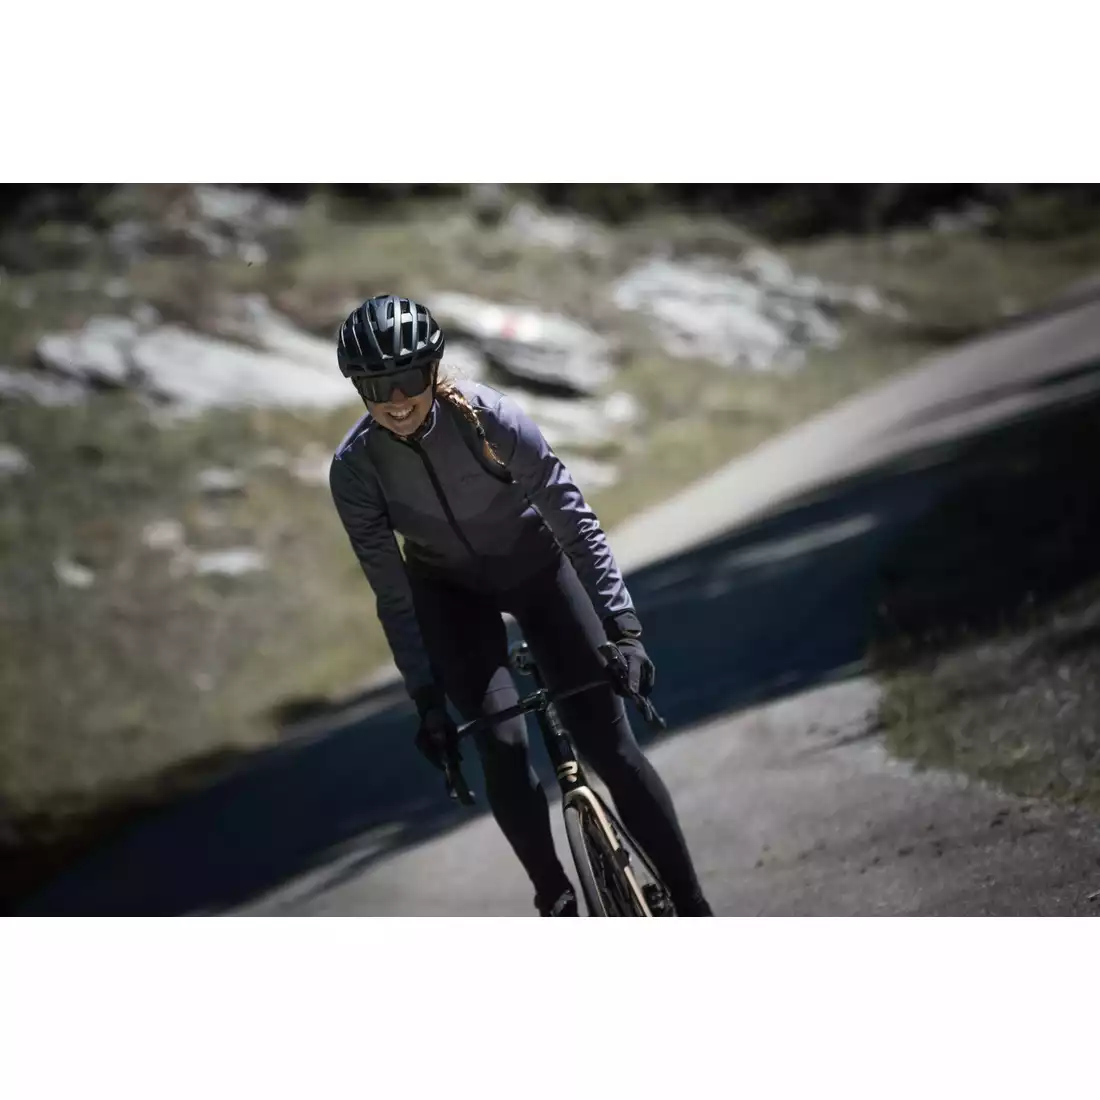 ROGELLI FARAH women's winter cycling jacket, black